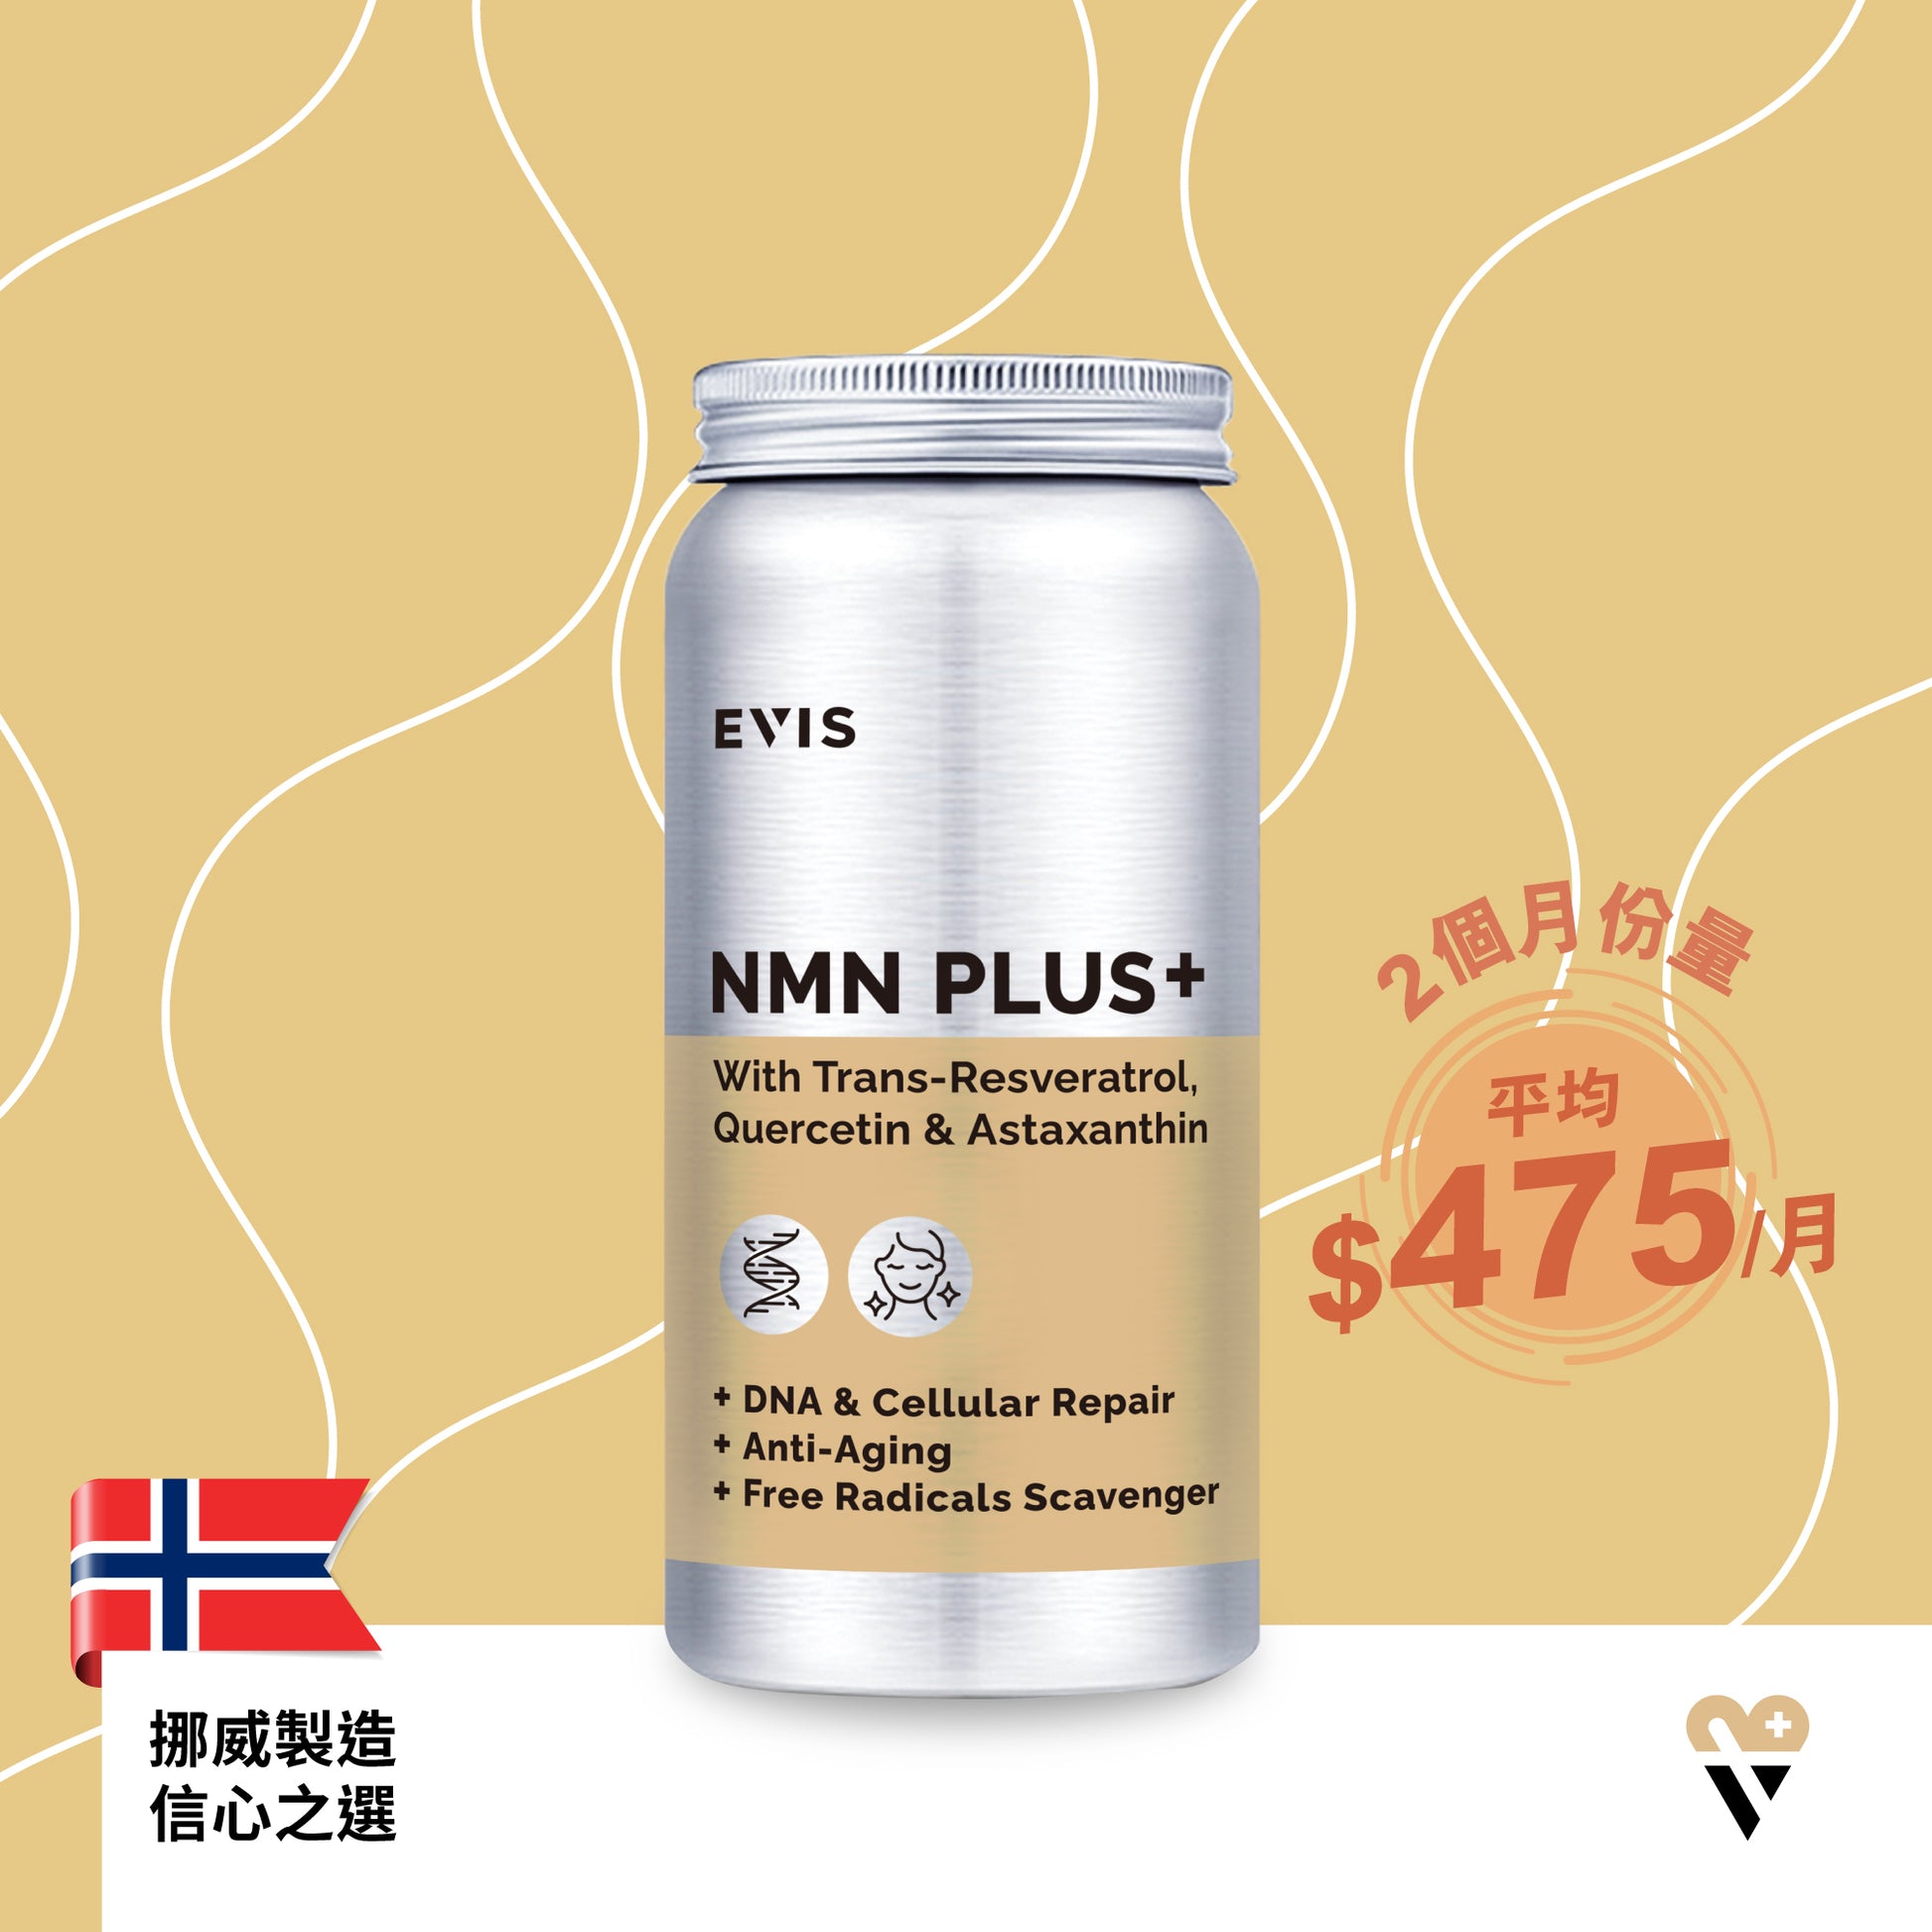 EVIS NMN PLUS+研活美肌-挪威製造-逆齡抗衰老